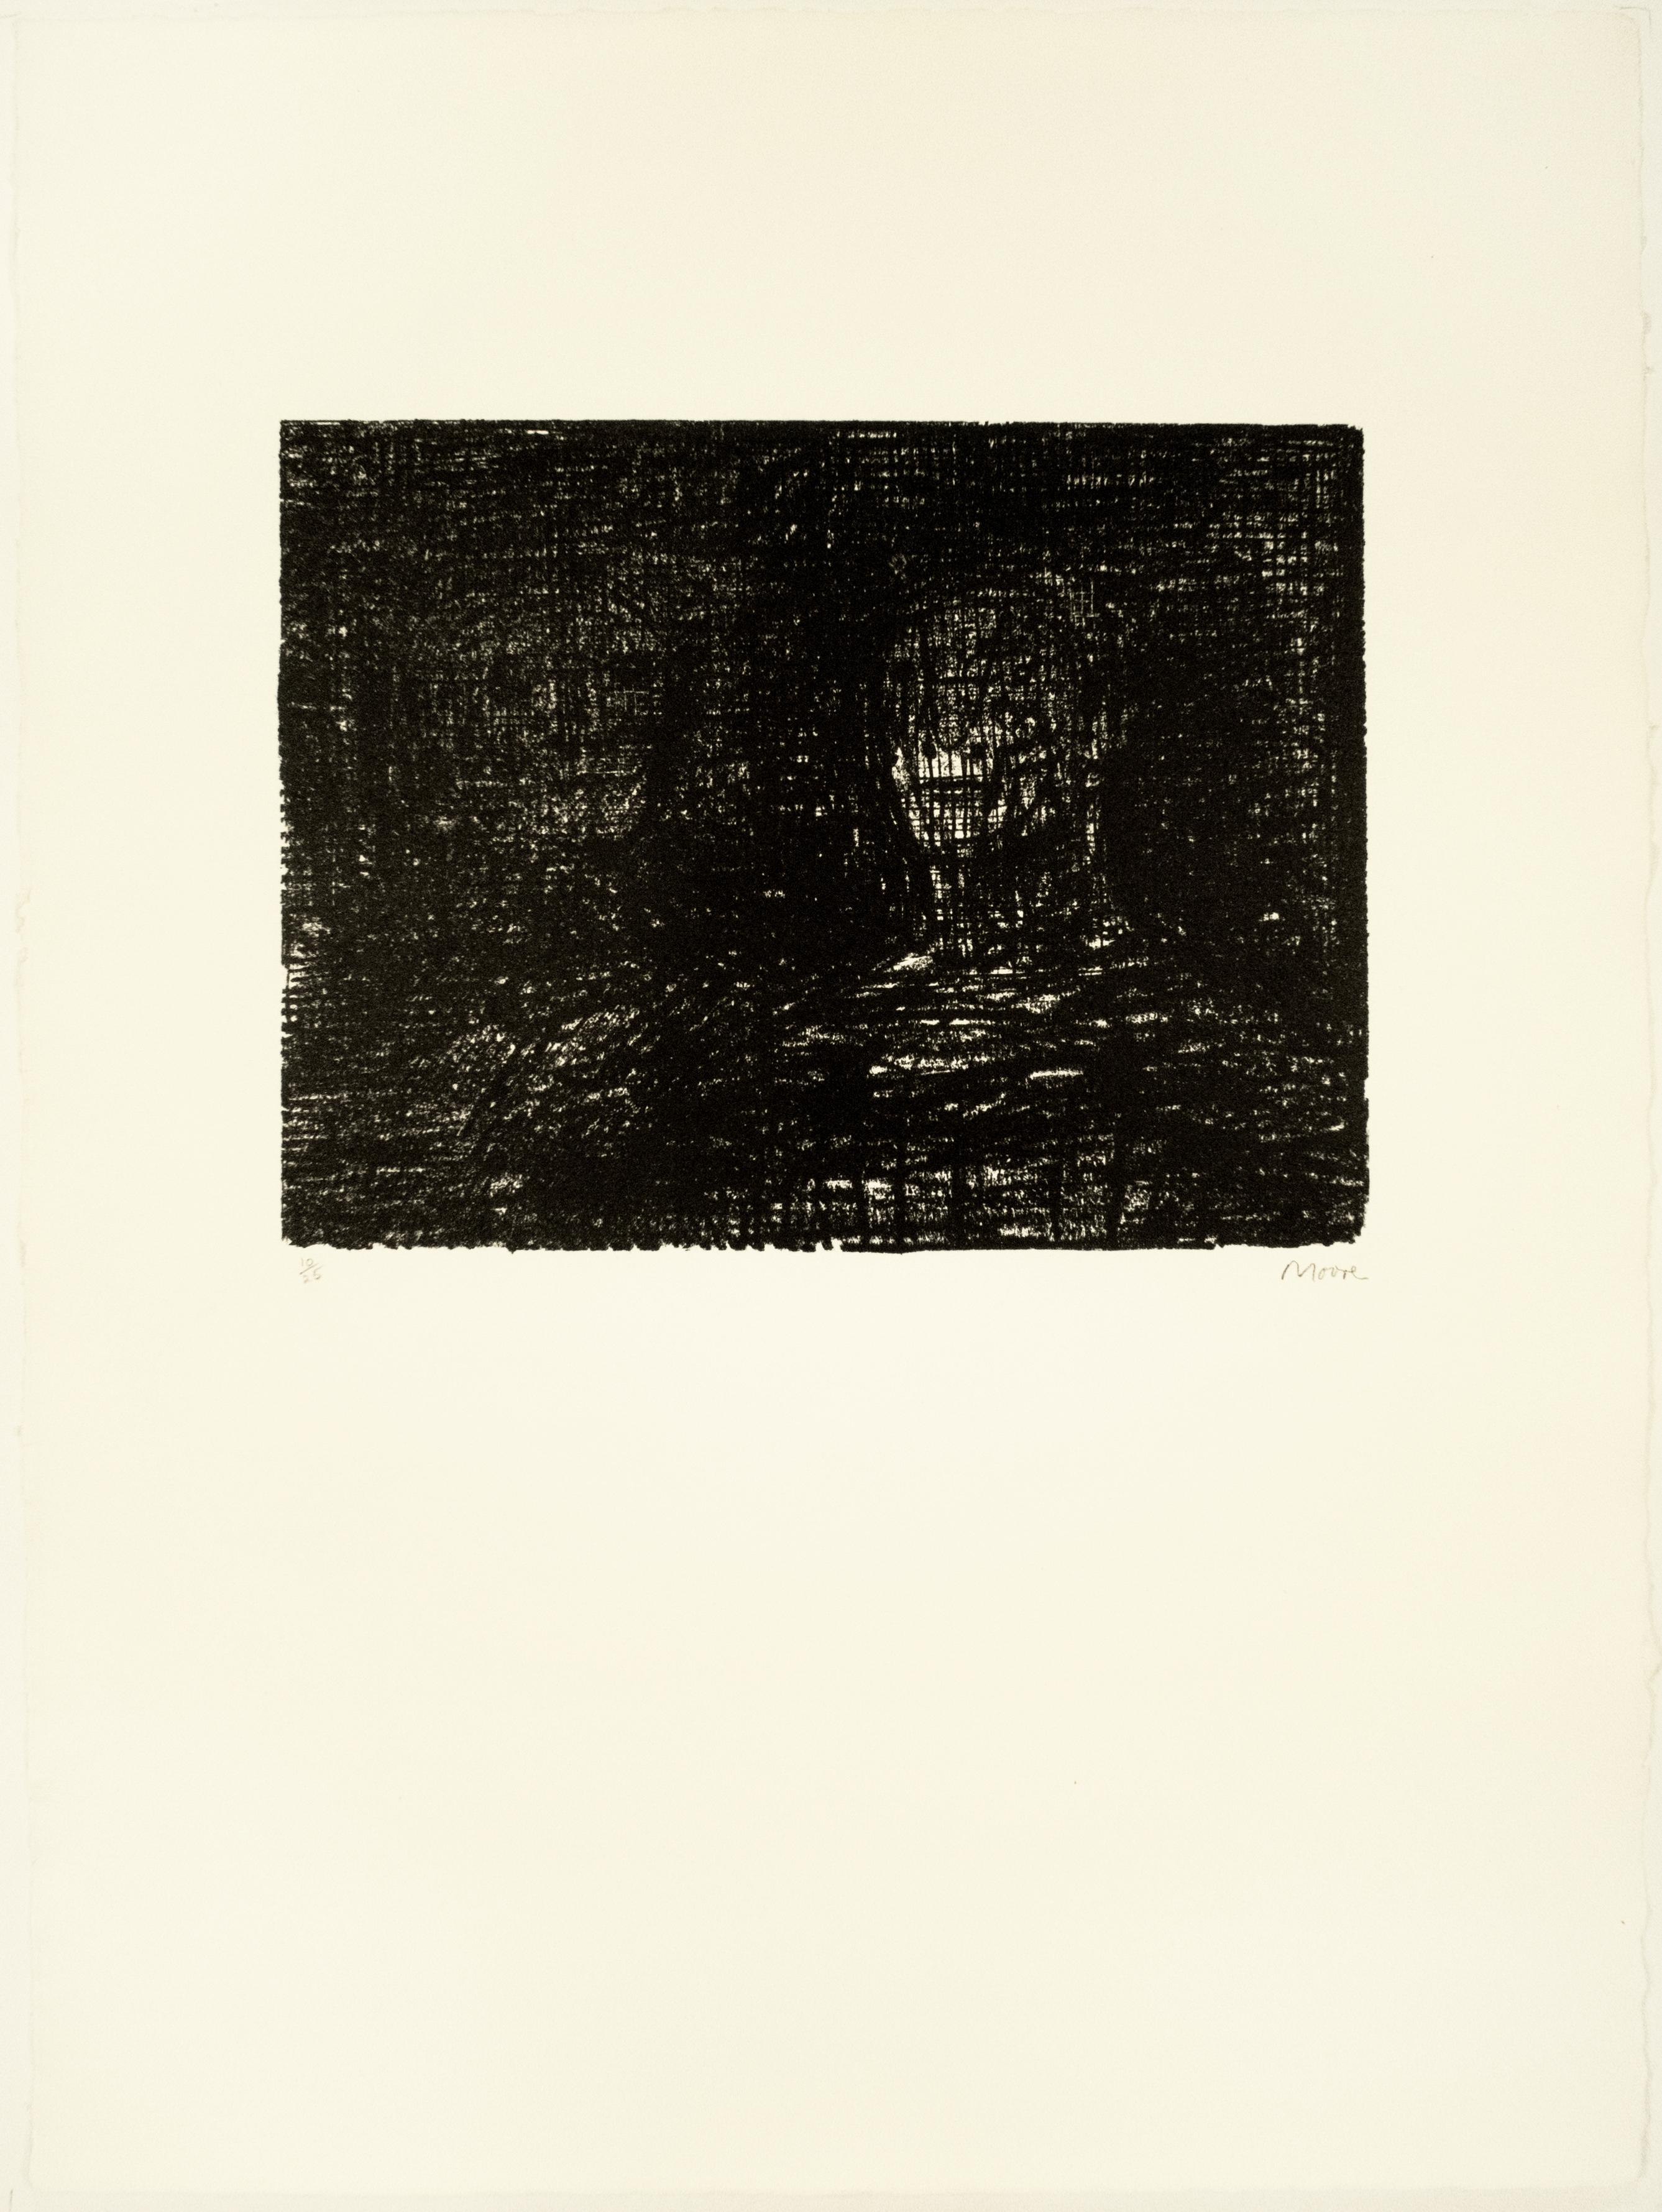 Thin-lipped Armourer I: schwarze Zeichnung nach Auden-Gedicht, Yorkshire-Landschaft – Print von Henry Moore